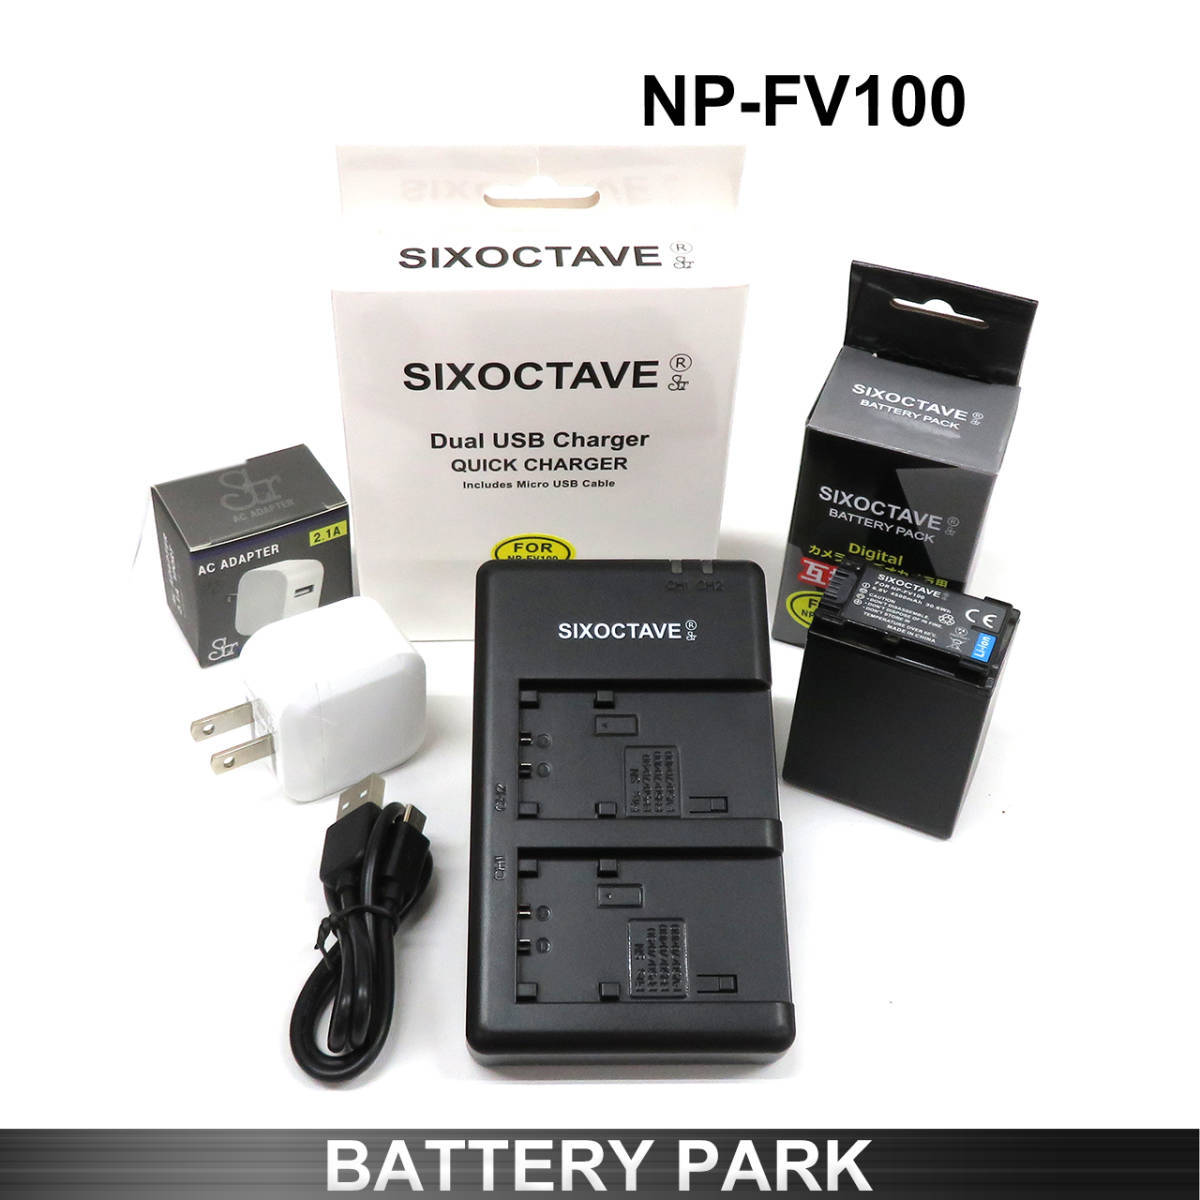 正規逆輸入品 SONY NP-FV100 NP-FV100a 互換バッテリーと充電器 2.1A